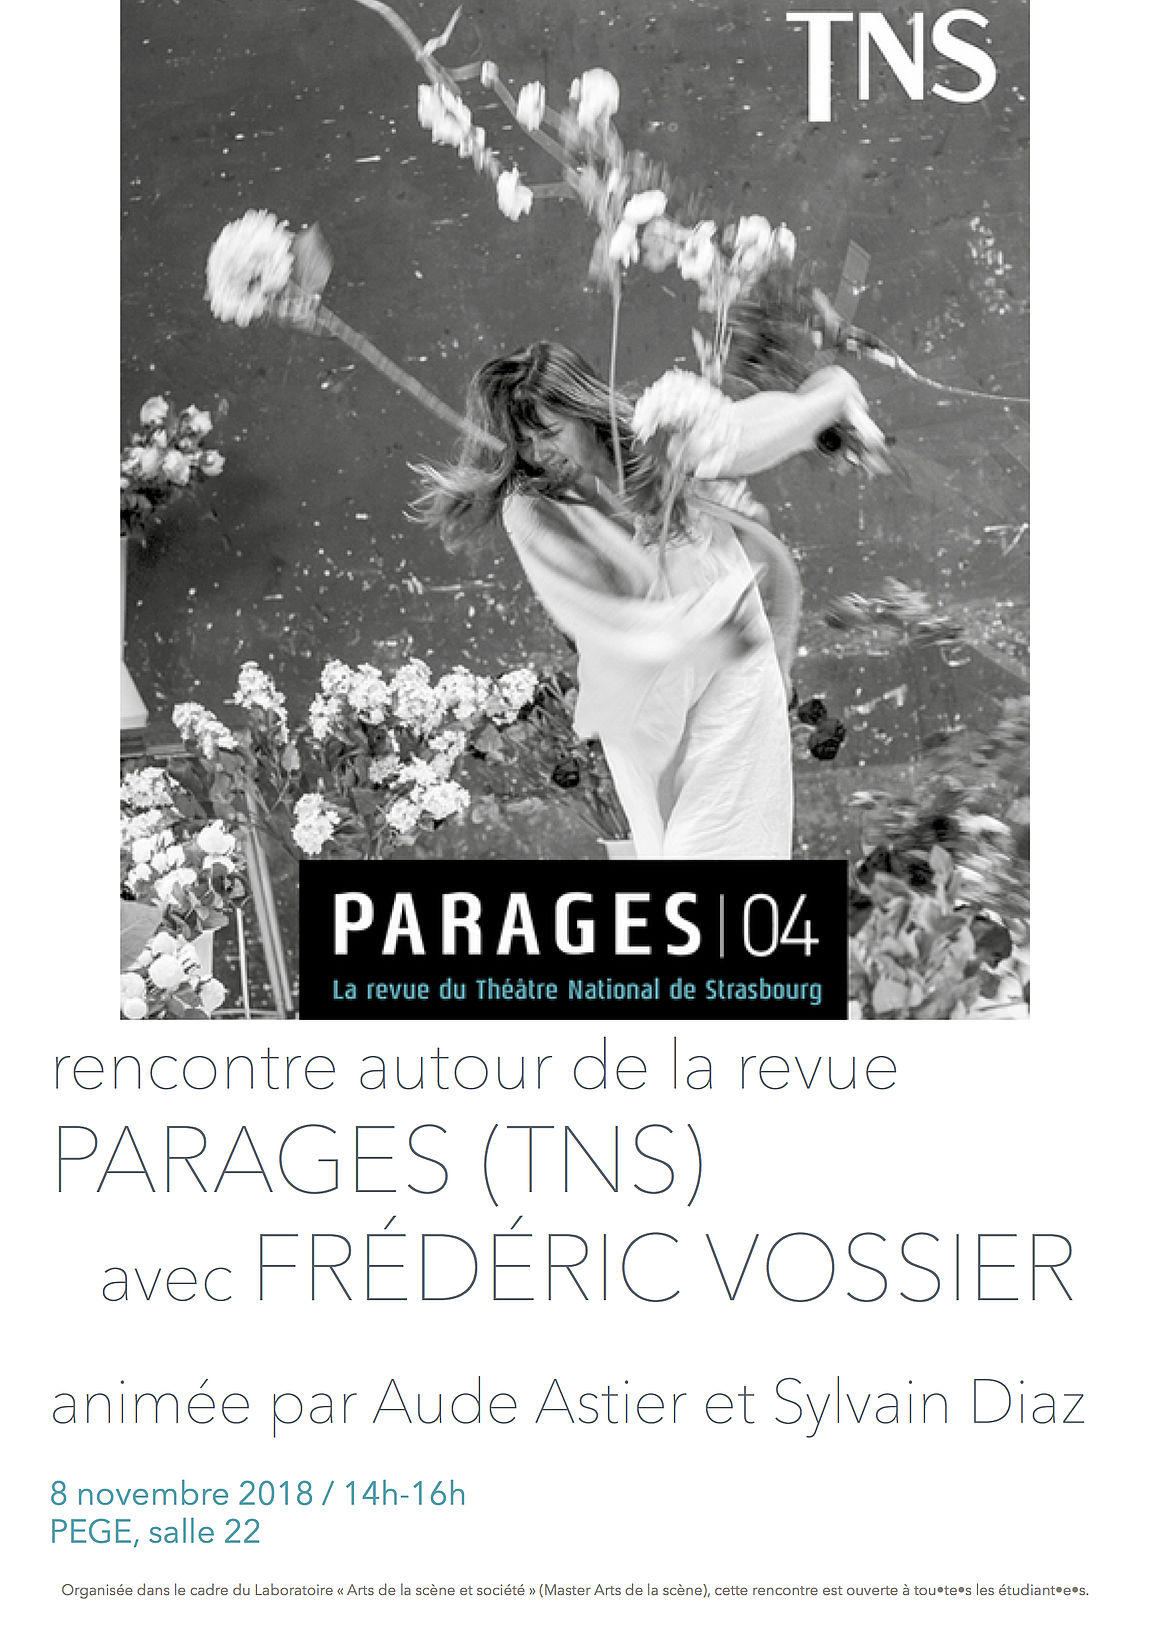 Rencontre avec Frédéric Vossier autour de la revue Parages, 8 novembre 2018